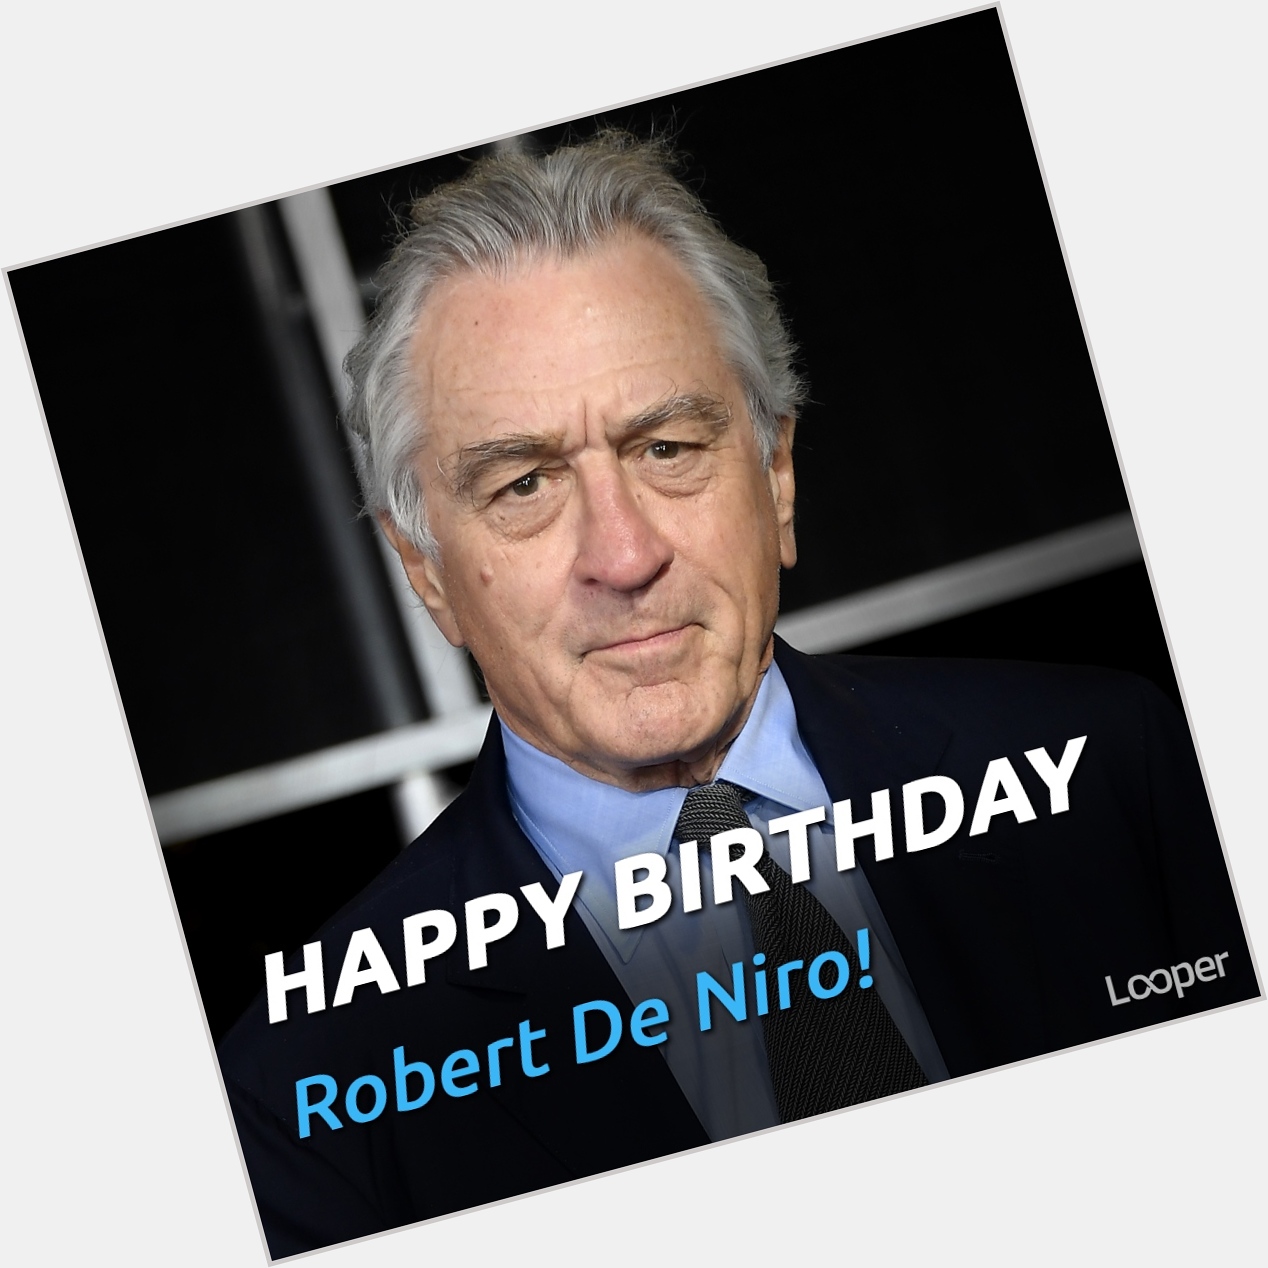 Happy Birthday Robert De Niro!

What is your favorite film? 